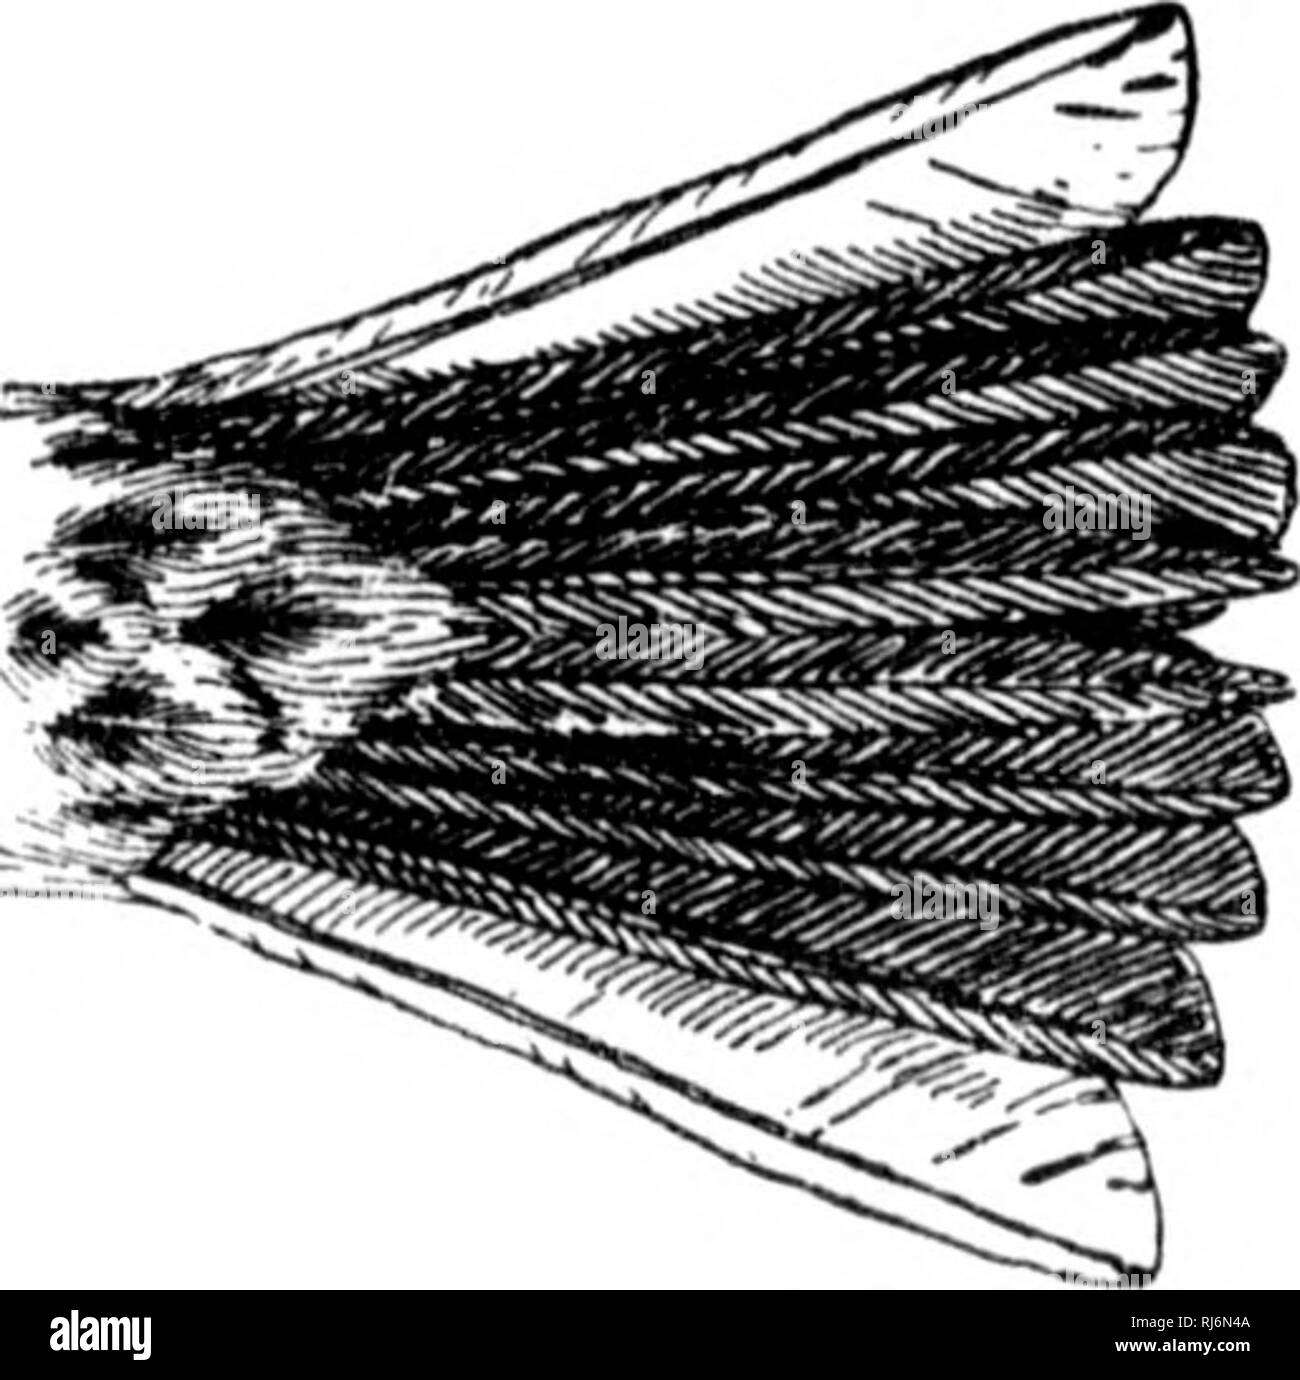 . Les oiseaux de l'Est de l'Amérique du Nord connu pour se produire à l'est de la quatre-vingt-dixième méridien [microform]. Les oiseaux sauvages, oiseaux, Oiseaux, oiseaux. &Lt ; bail sur et hack, grisâtres ou huffy, striées de hlaok ishoulder ; (locateur win&Lt ; ? Nifous eoverts), J) ; bail sur hreast, strié ; j2;reater partie de l'extérieur de plumes de queue, y compris web, blanc. Bruant vespéral. Bay-winged Bunting. Grass Finch. Pi localise f/ra)) iinpit !i. Voir n° 40S. Couronne et un dos brun foncé, ardoise ou brun roux terne ; croupion et la sur- face de la queue brun roux, la lumière ; unchn-lieavily wliite, pièces, striées anil repéré sur hreast et côtés Banque D'Images